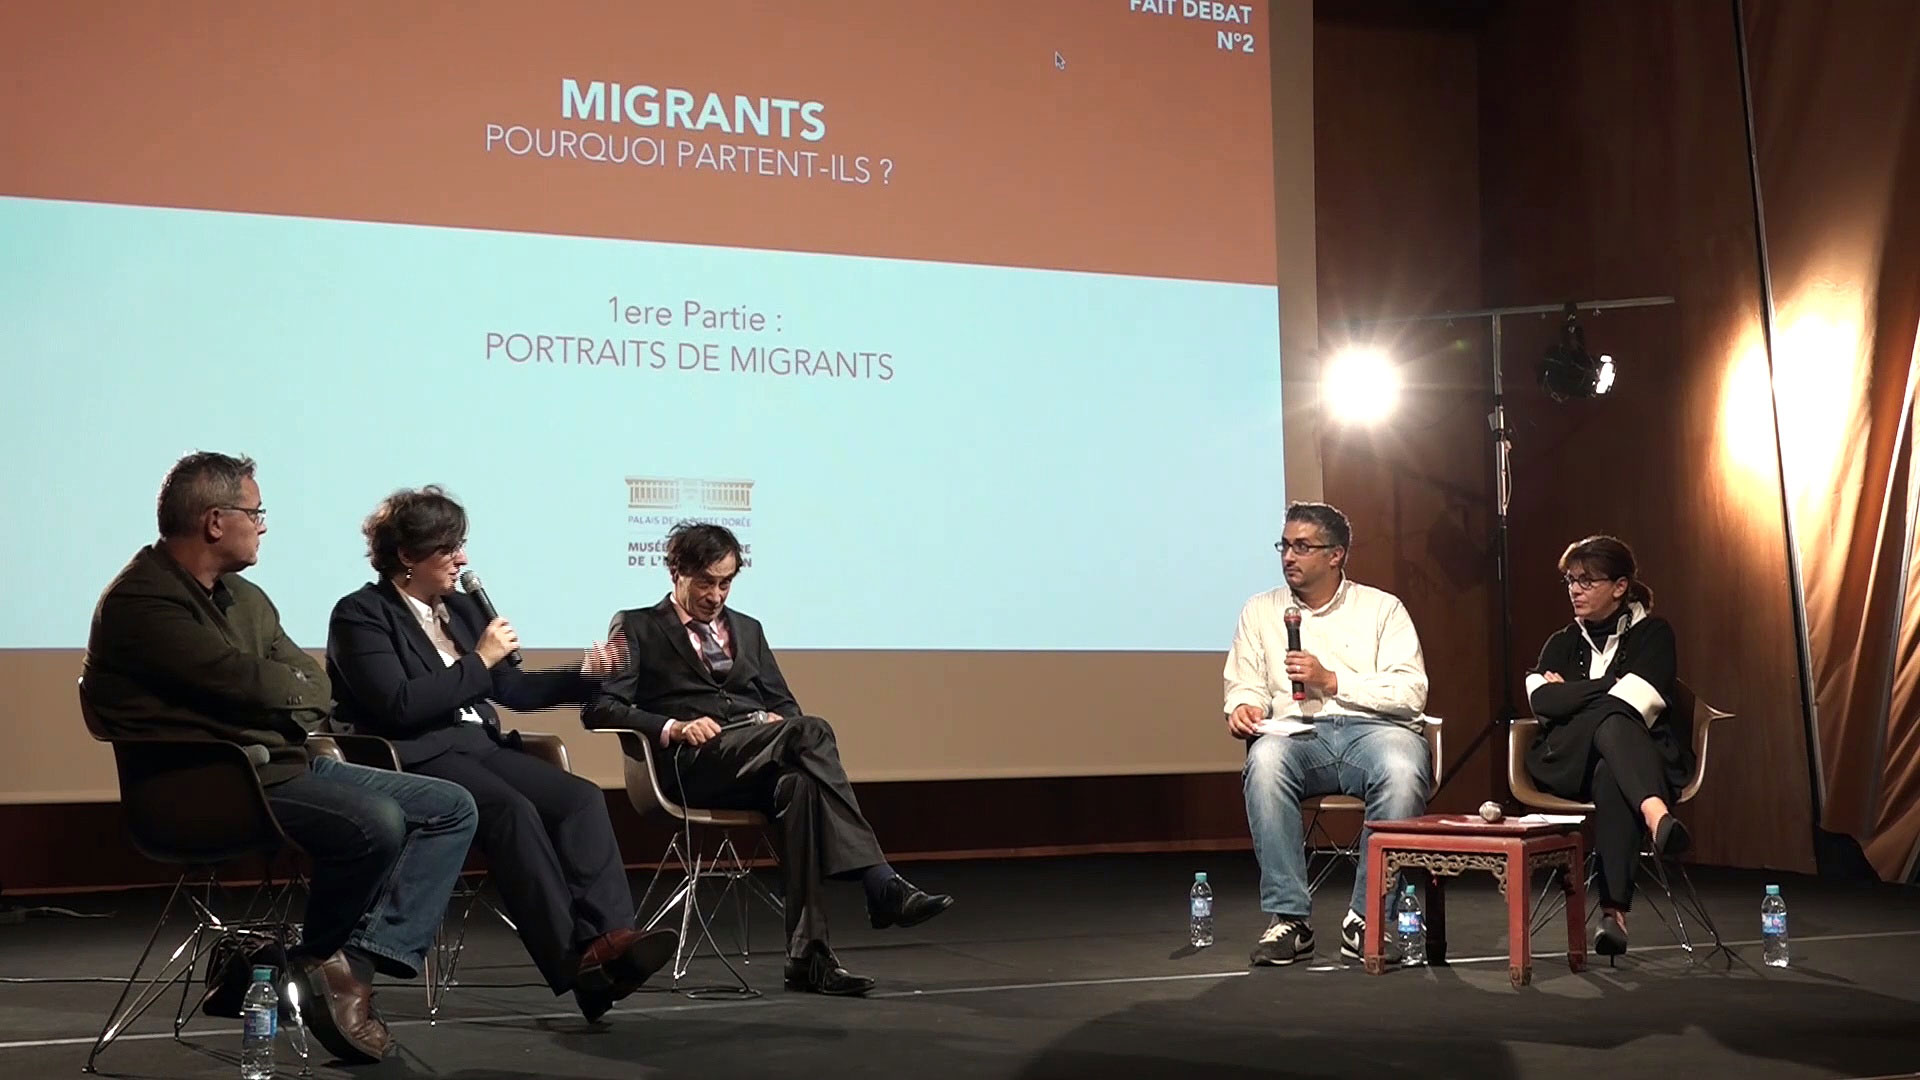 Migrants : pourquoi partent ils ?

Quand l’immigration fait débat #2